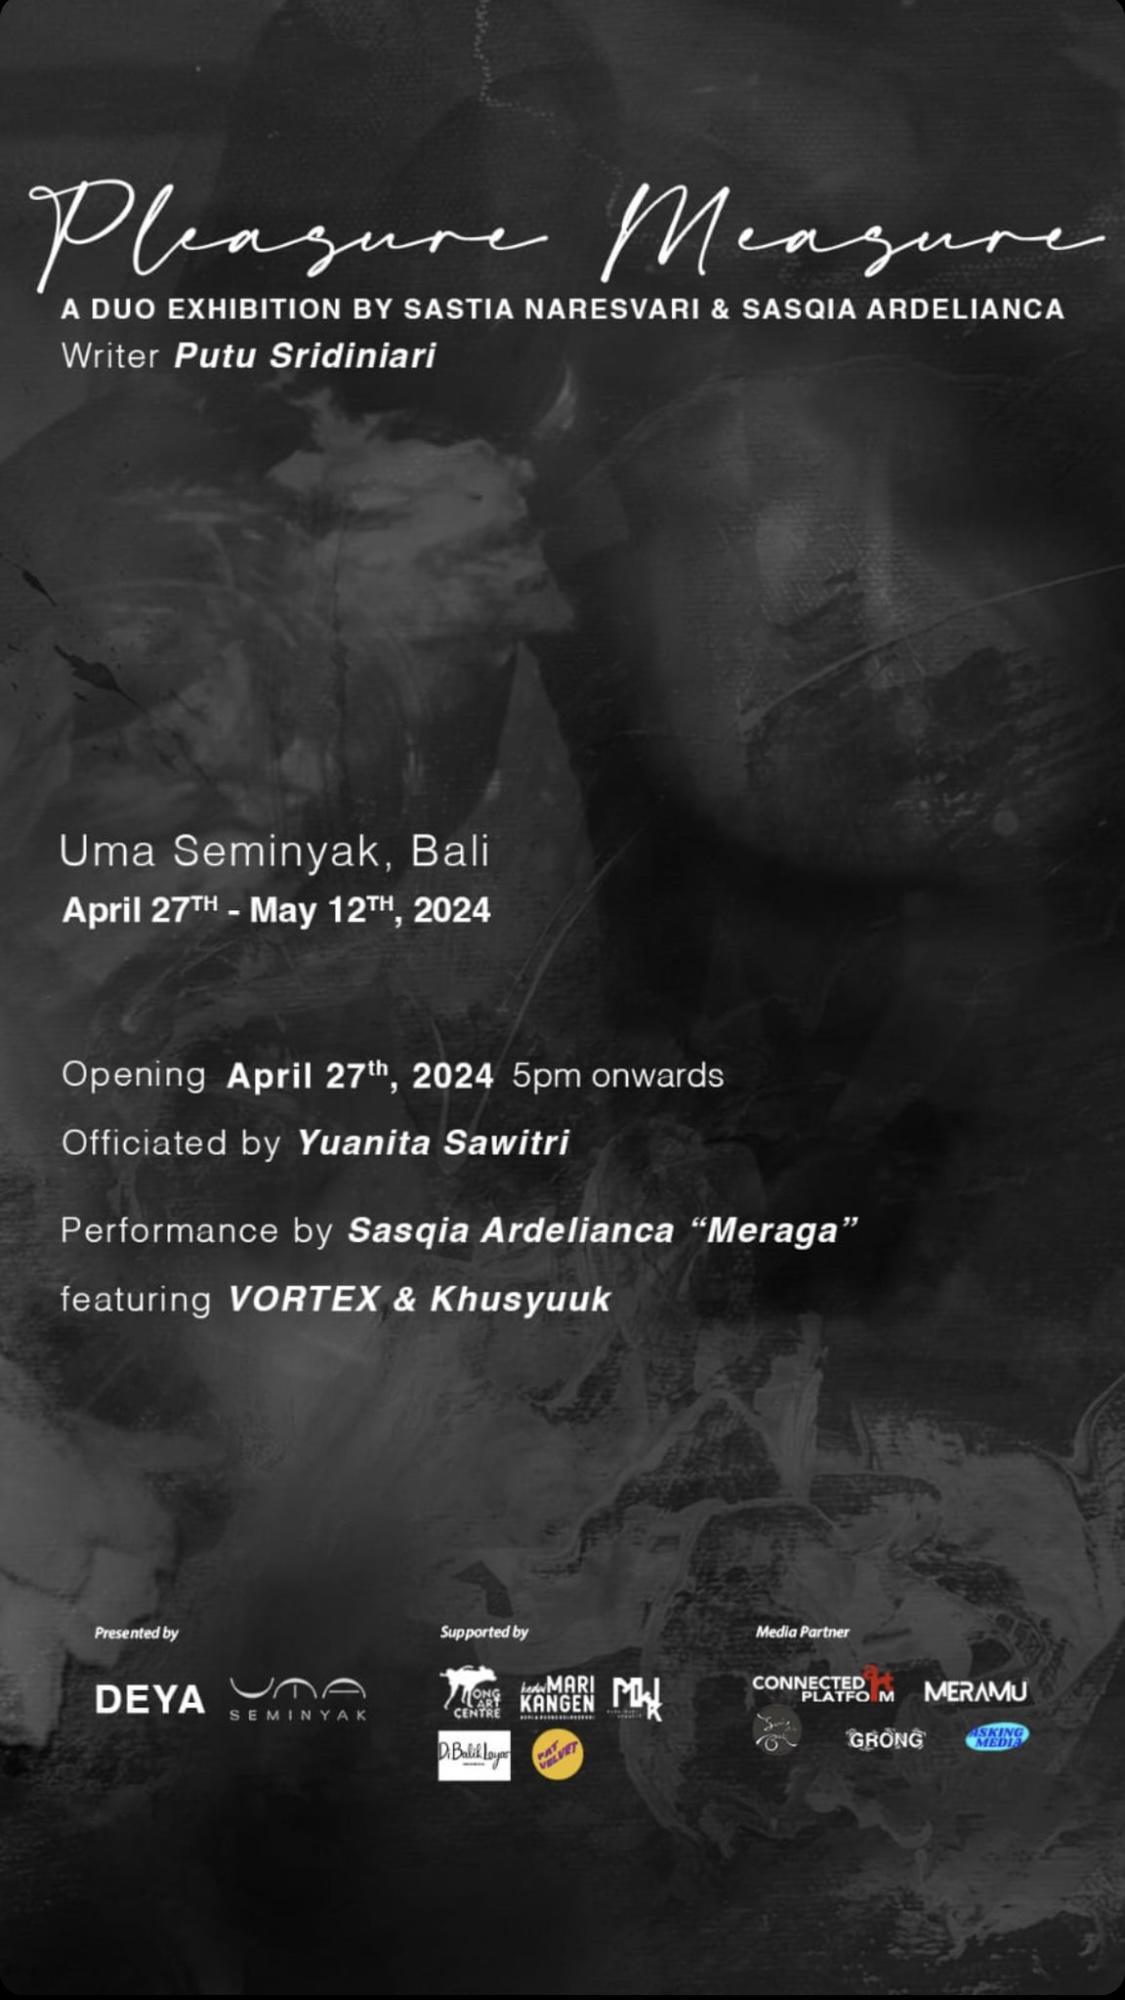 Art Opening Party of Exhibit at Uma Seminyak 2808